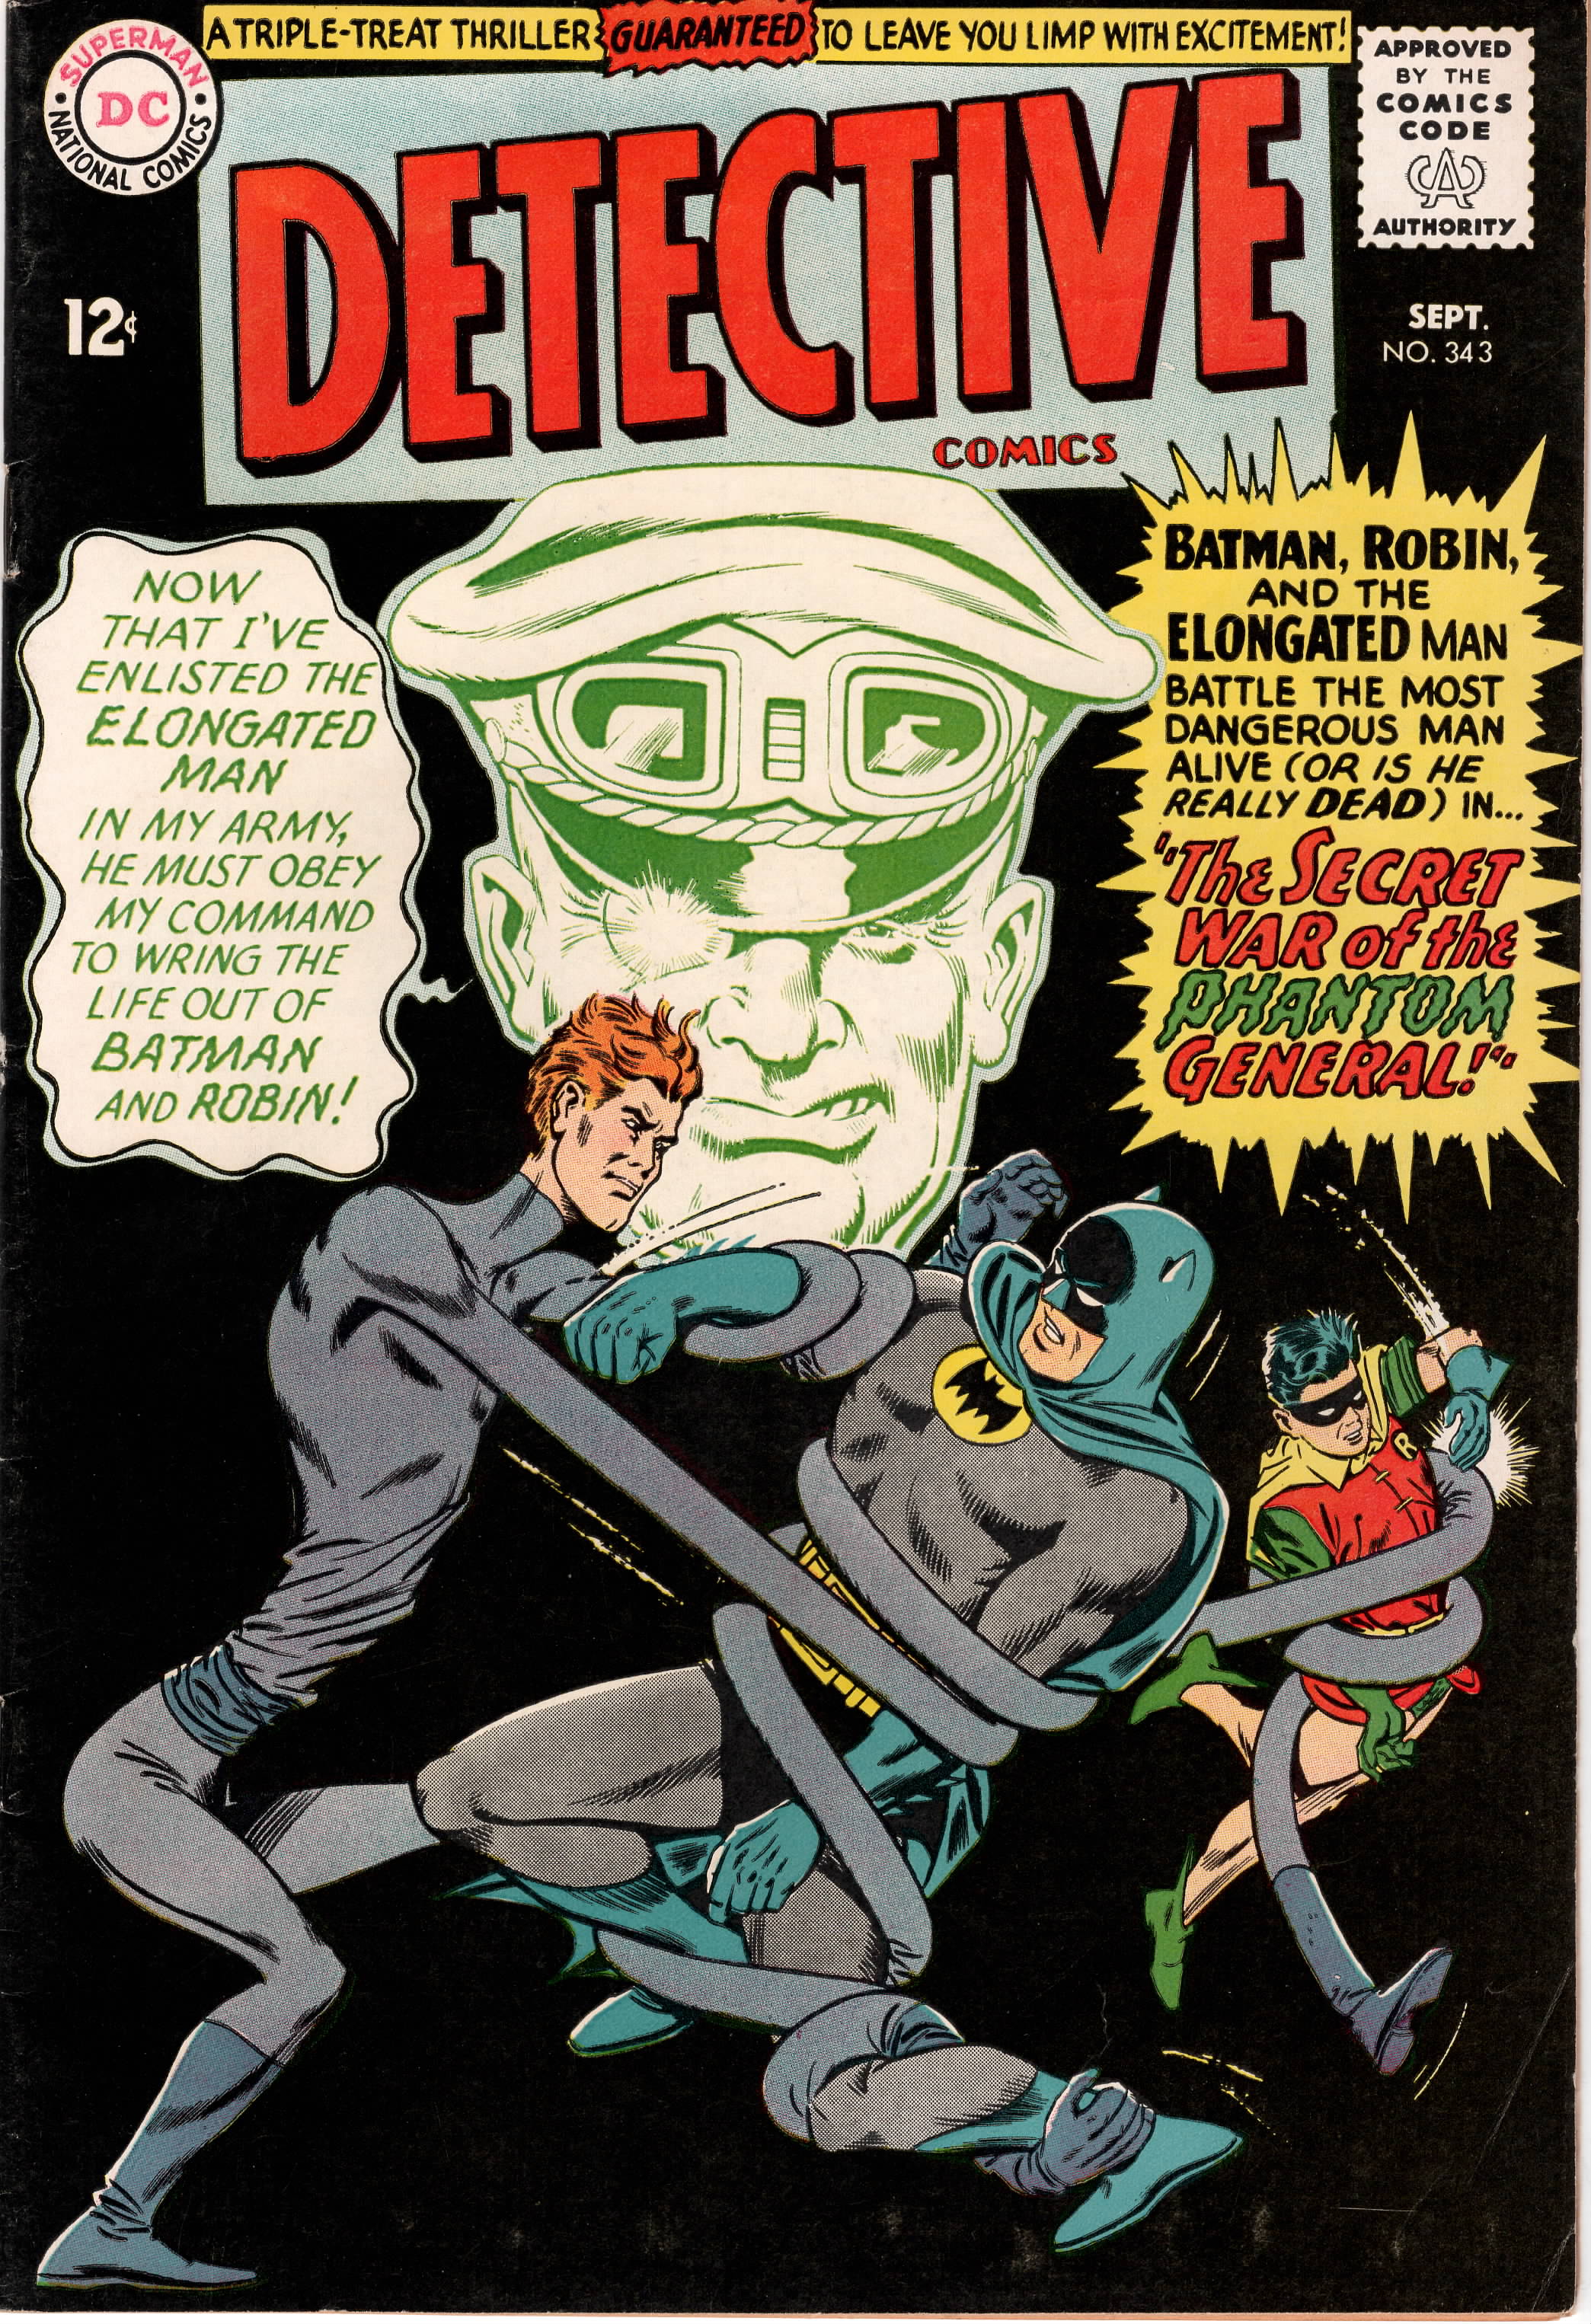 Detective Comics #0343